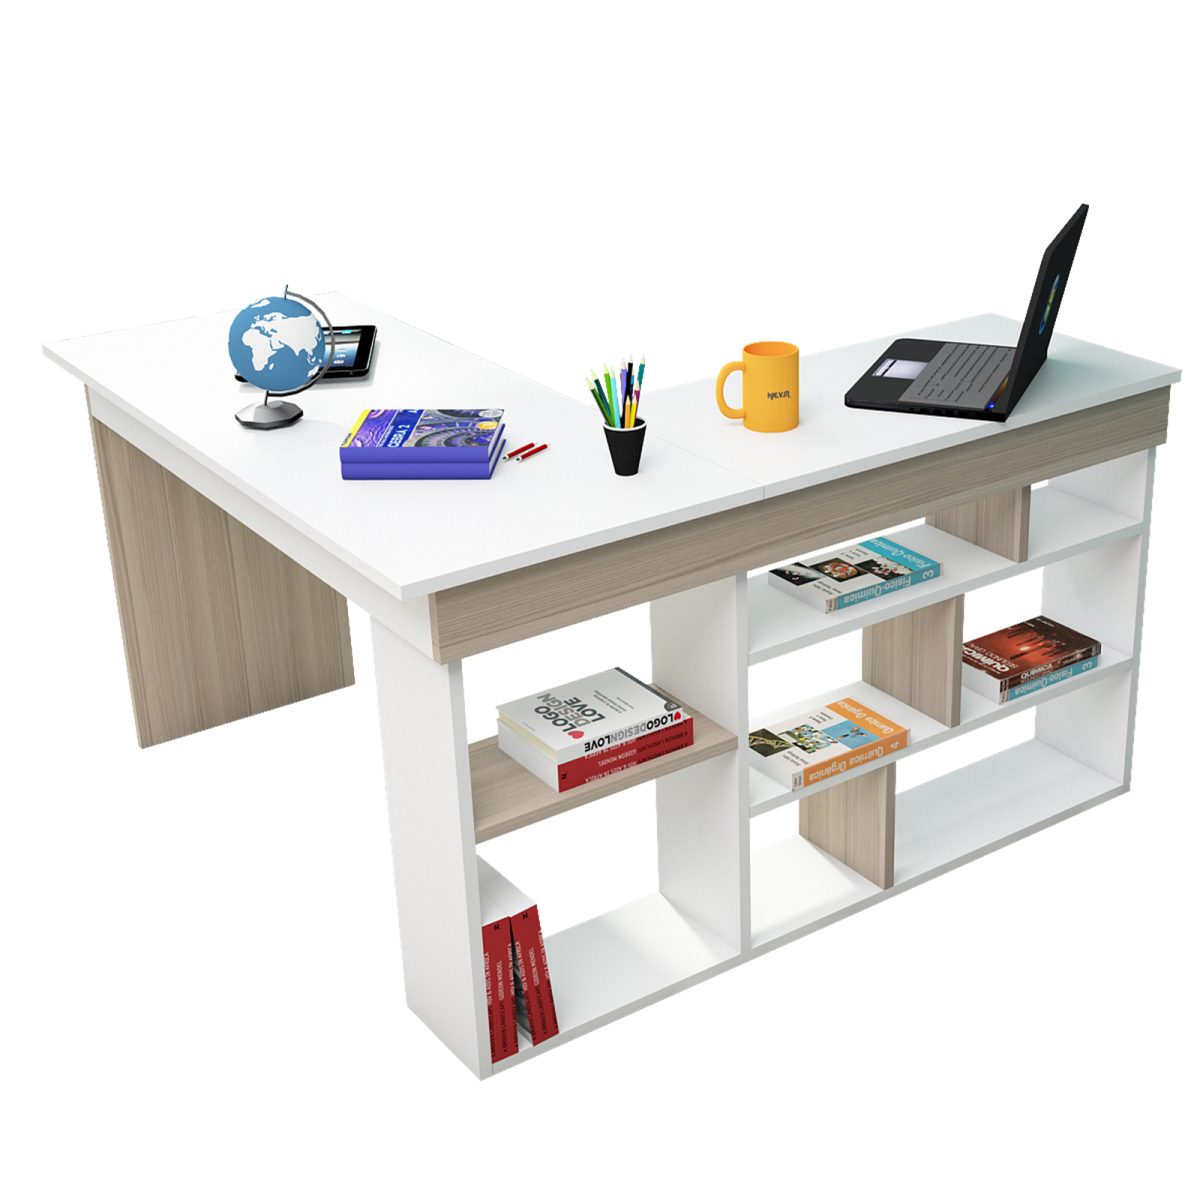 Beyaz ve meşe renkli çalışma masası